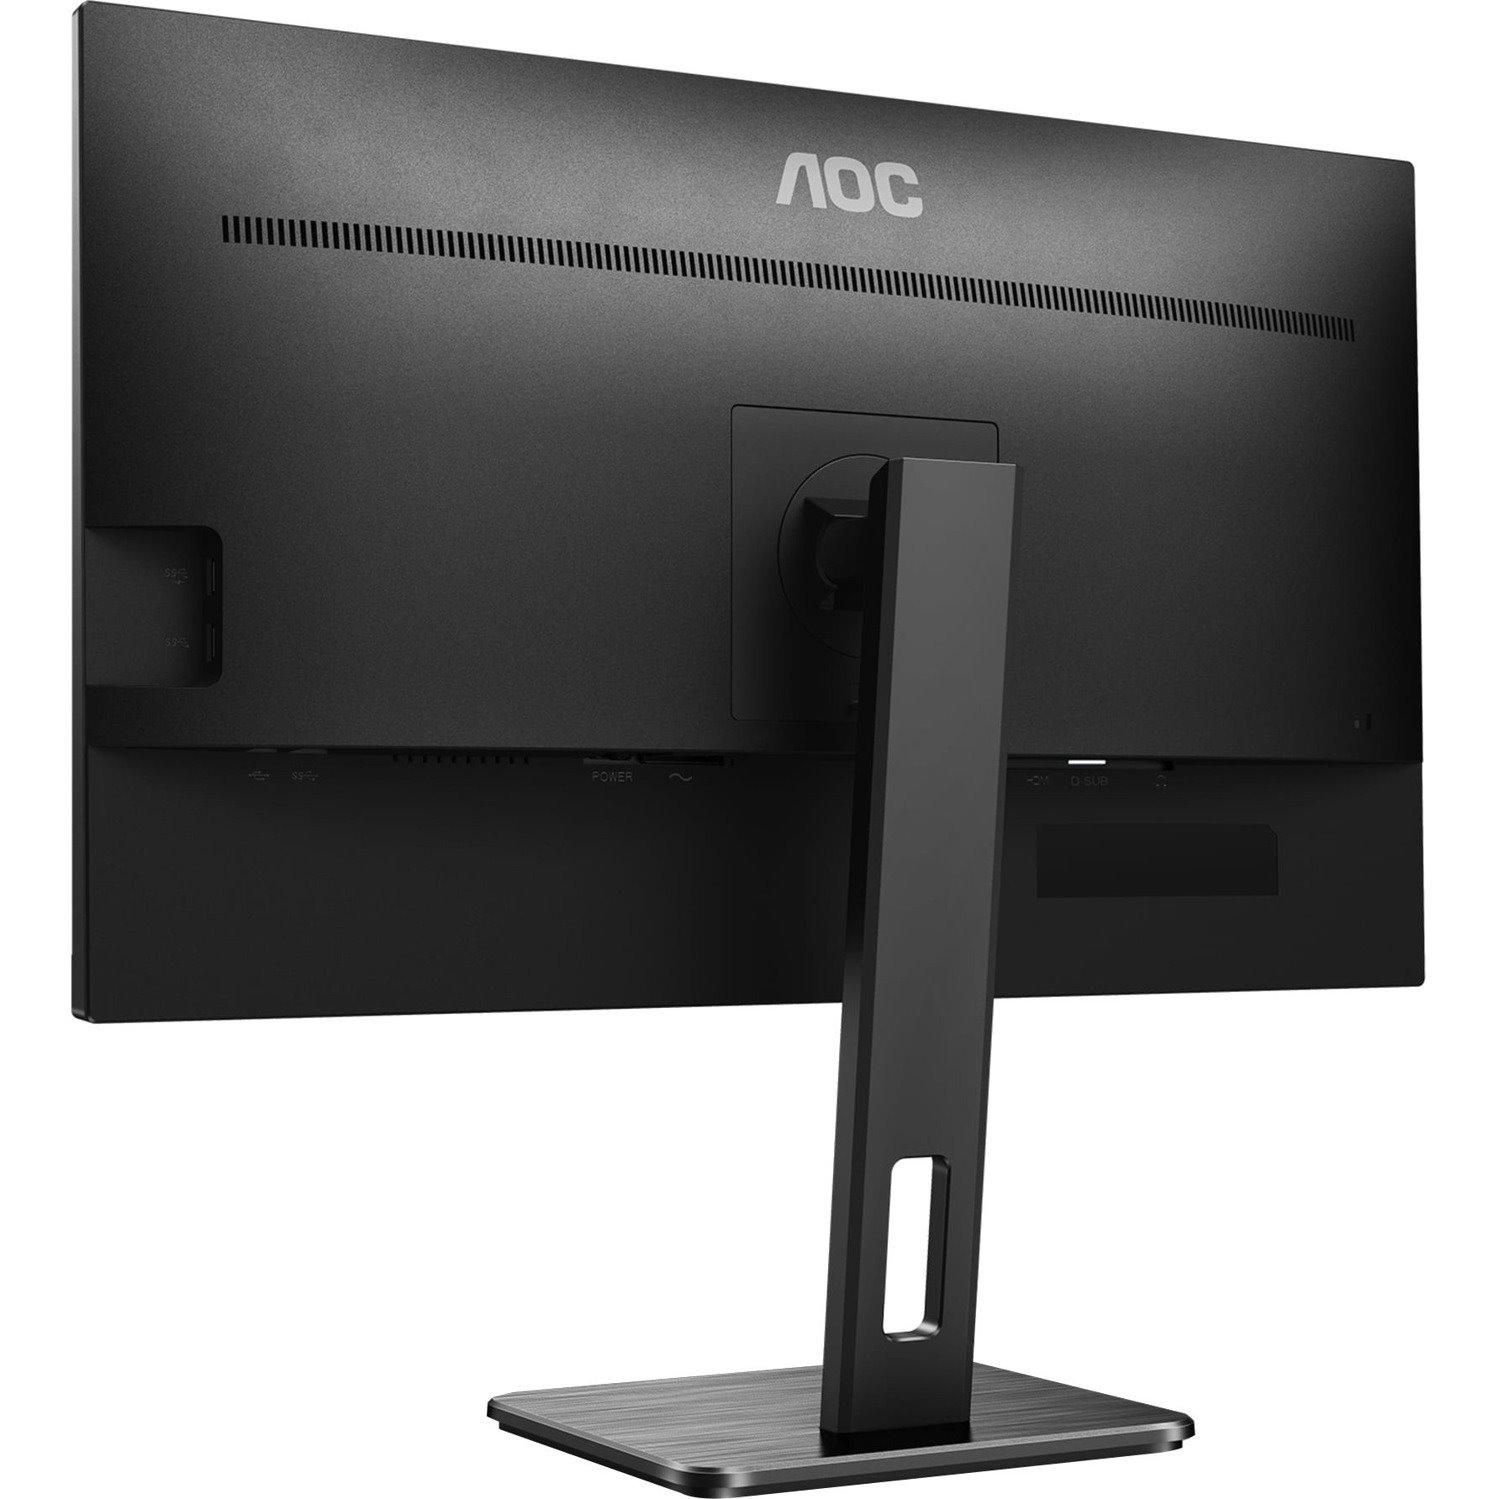 AOC 27P2Q 27" Class Full HD LCD Monitor - 16:9 - Black